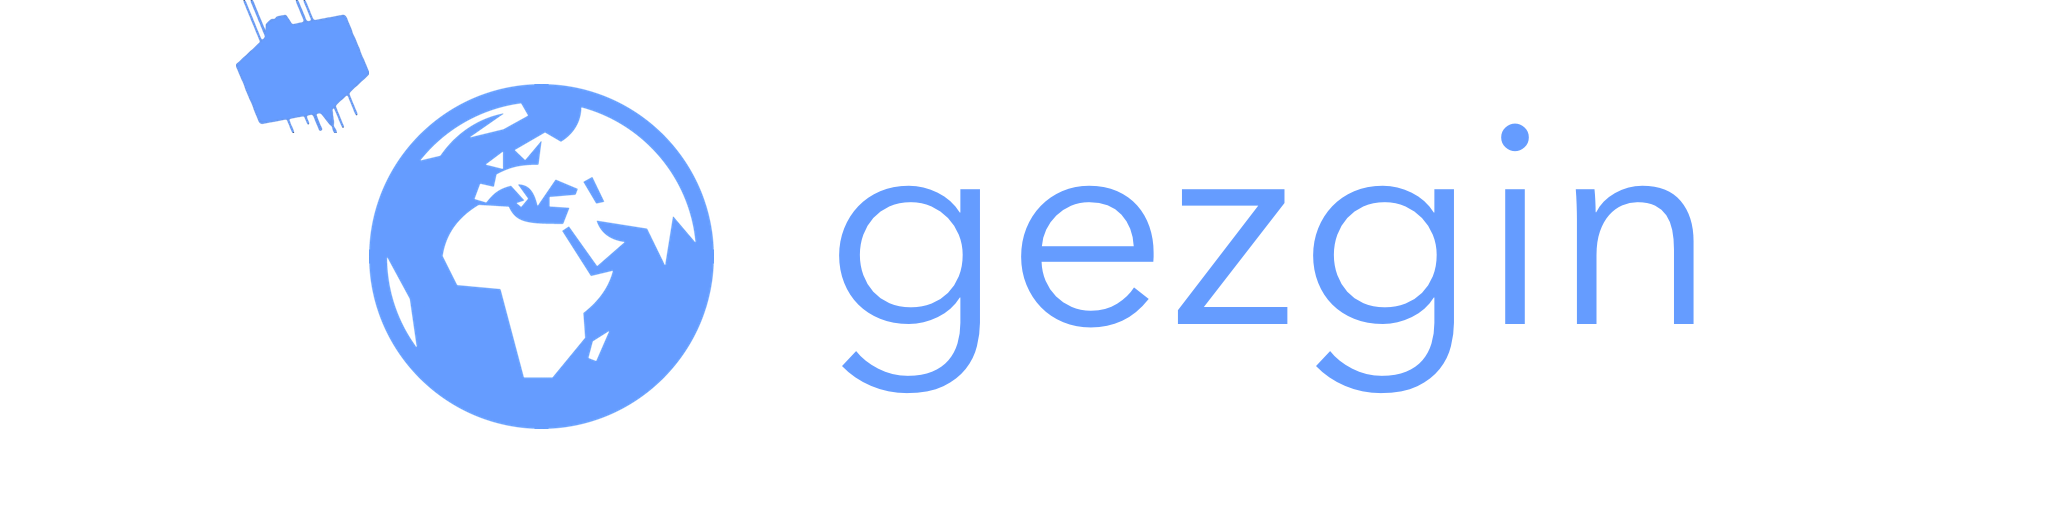 gezgin_blog_logo